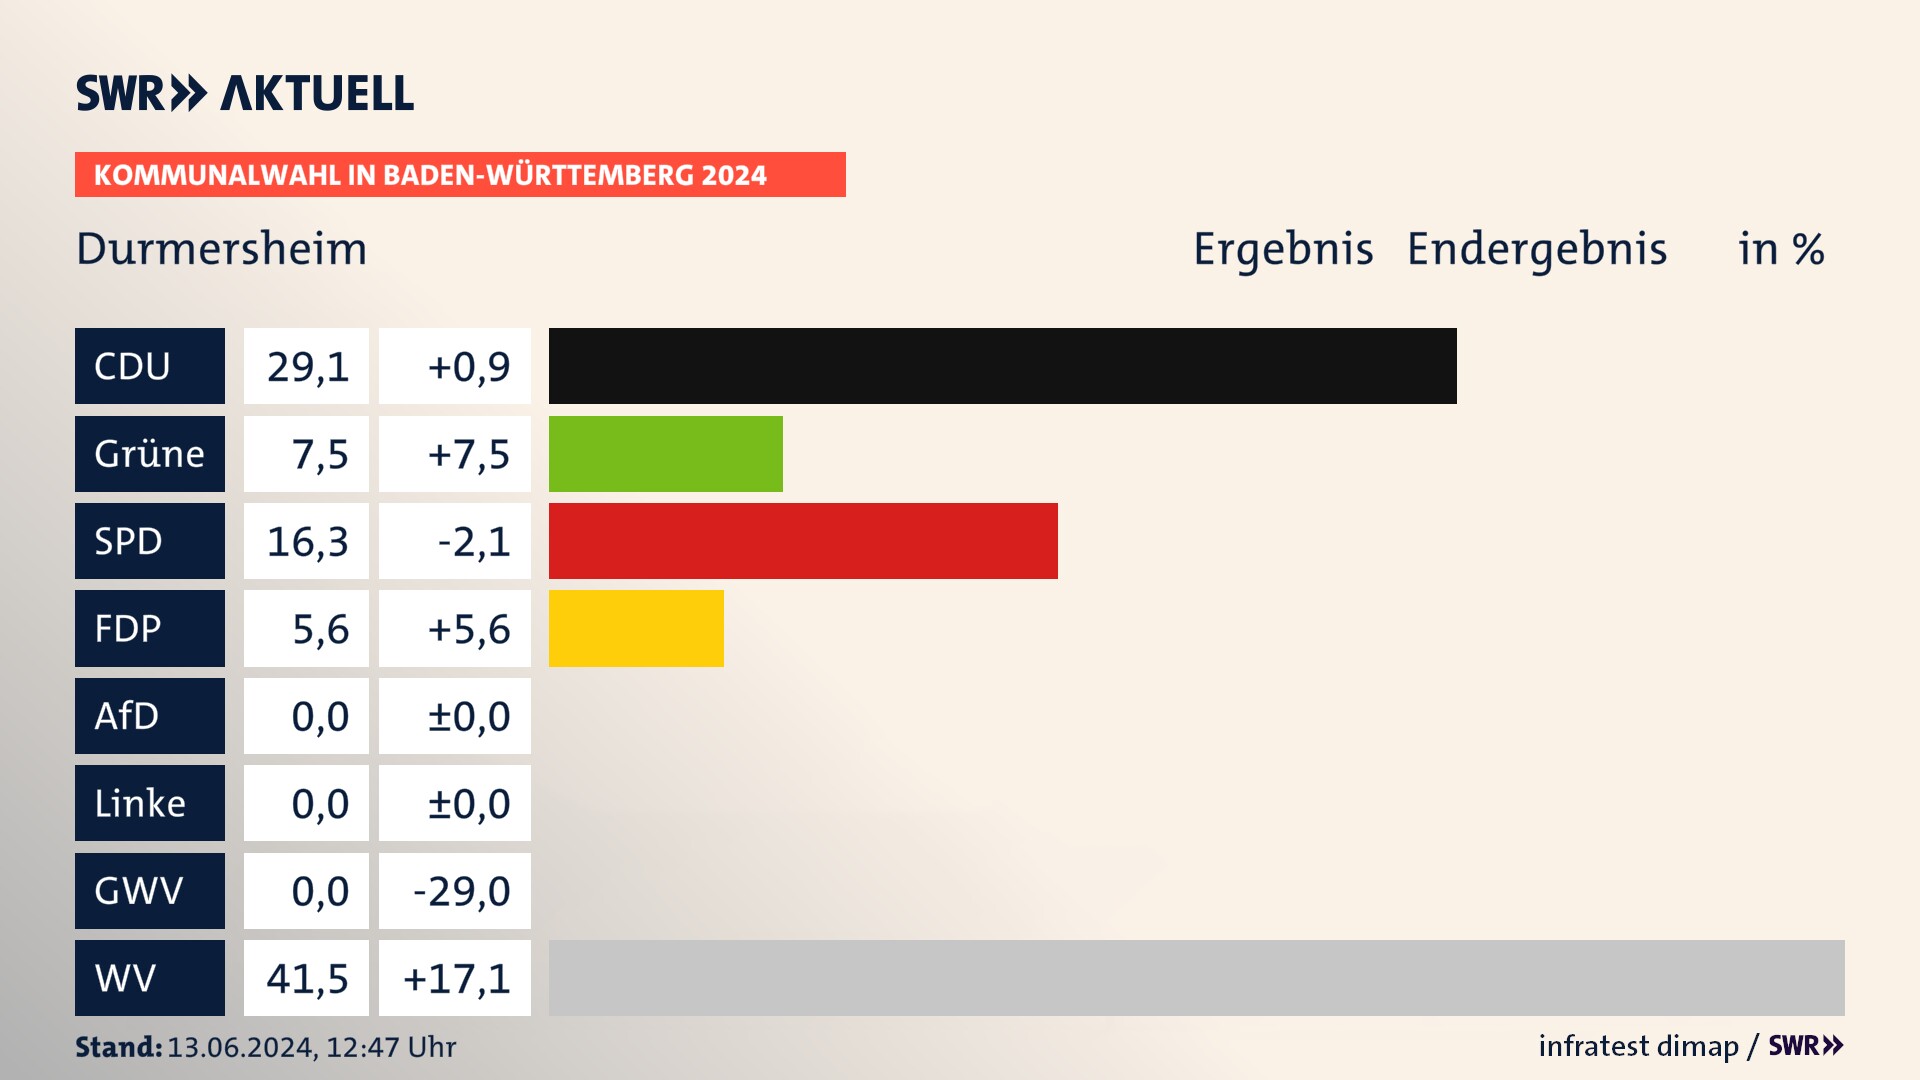 Kommunalwahl 2024 Endergebnis Zweitstimme für Durmersheim. In Durmersheim erzielt die CDU 29,1 Prozent der gültigen  Stimmen. Die Grünen landen bei 7,5 Prozent. Die SPD erreicht 16,3 Prozent. Die FDP kommt auf 5,6 Prozent. Die Wählervereinigungen landen bei 41,5 Prozent.